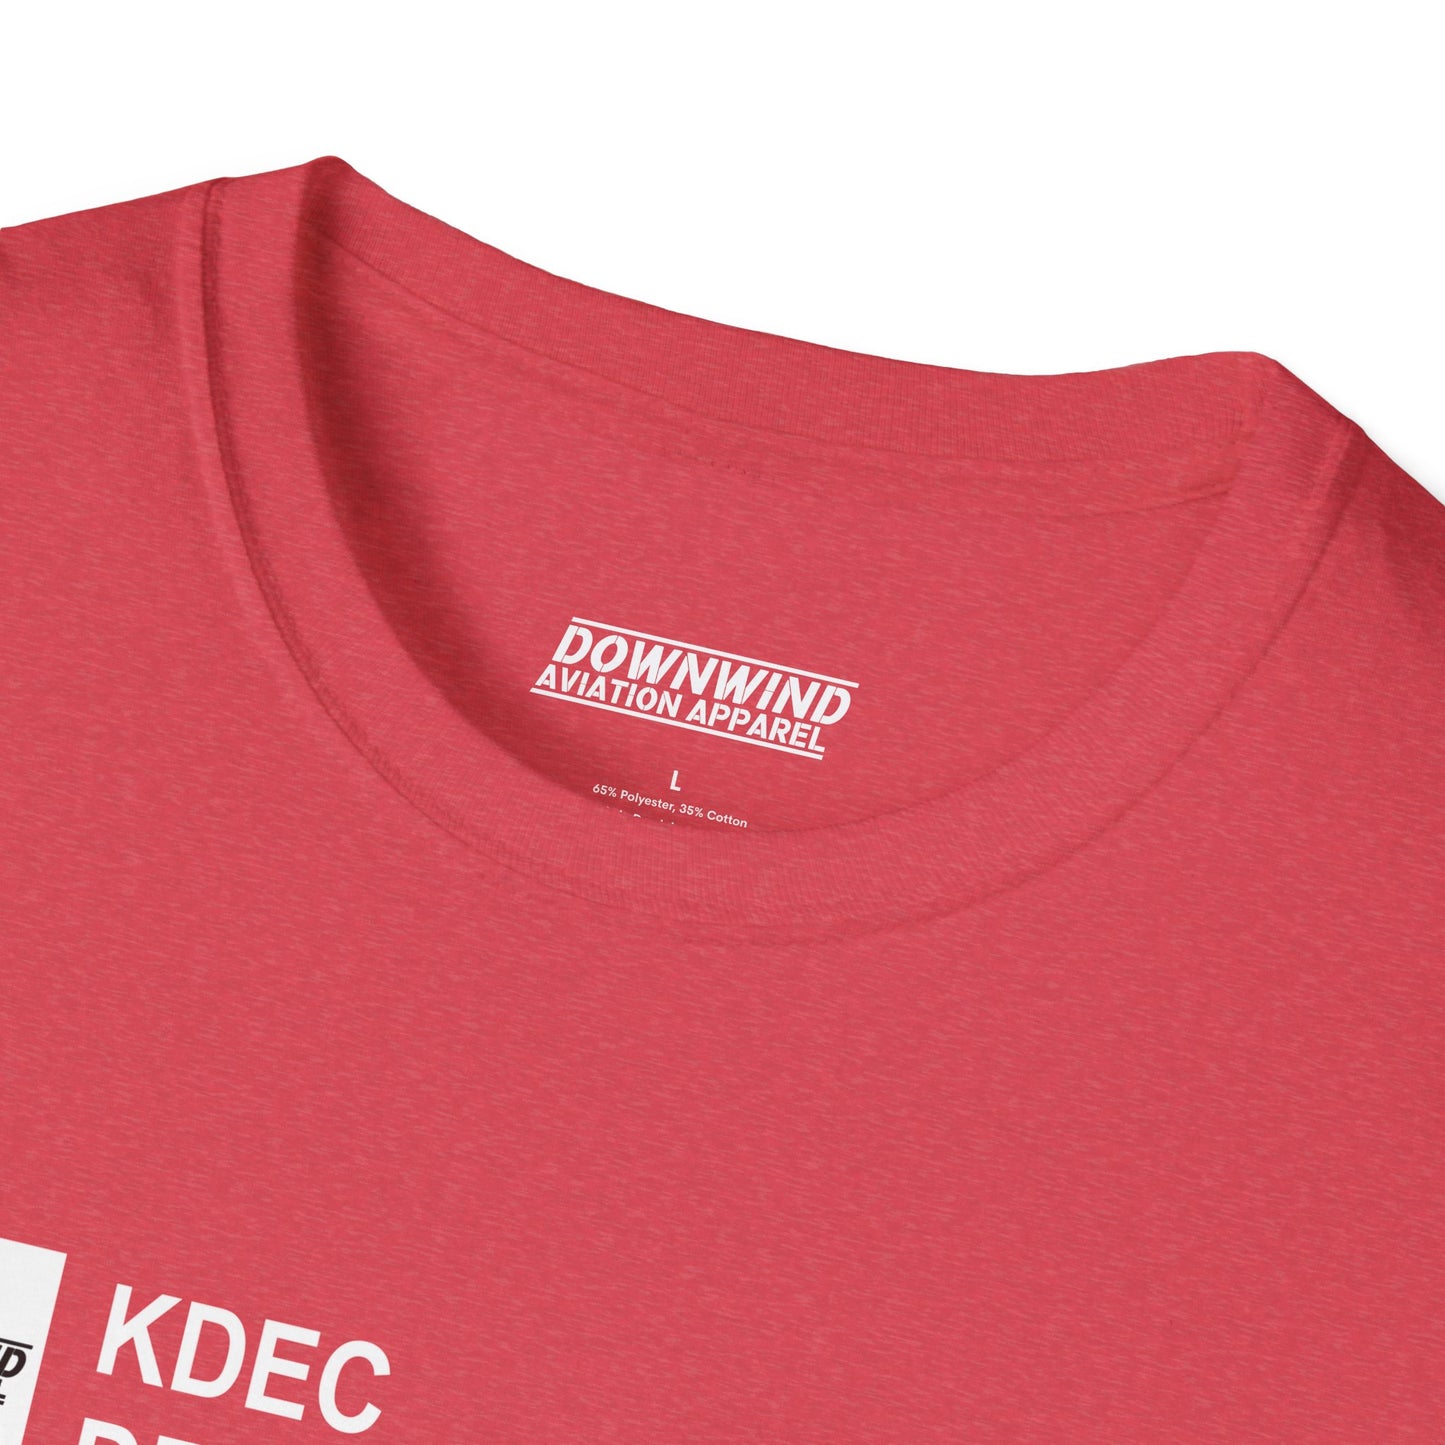 KDEC / Decatur Airport T-Shirt